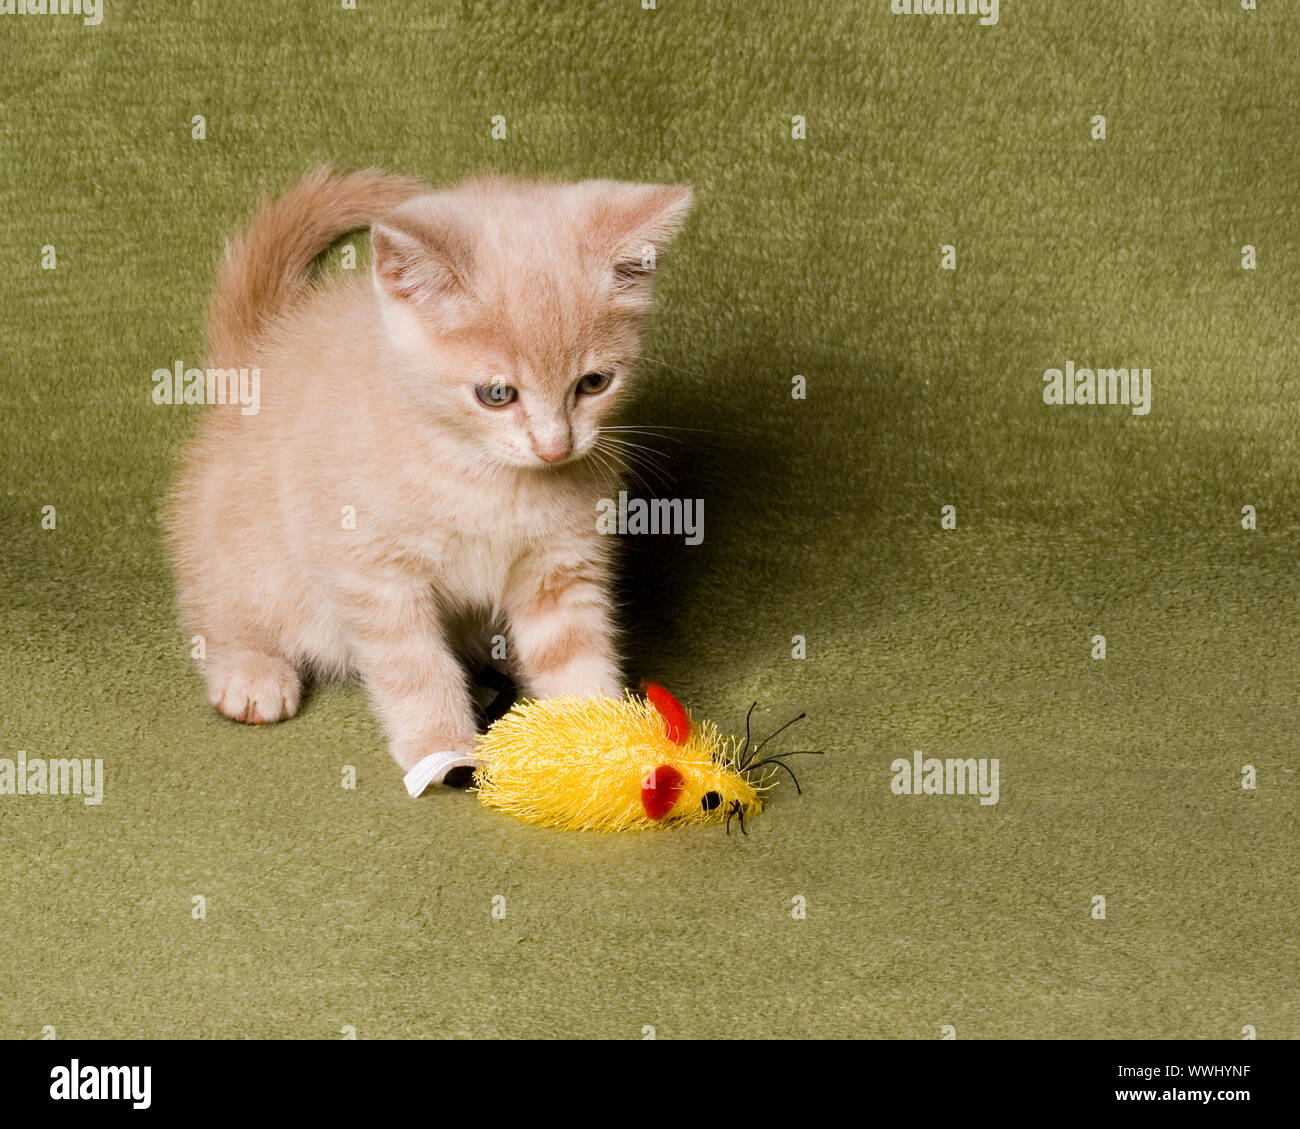 Lindo gatito jugando con su ratón de juguete Foto de stock